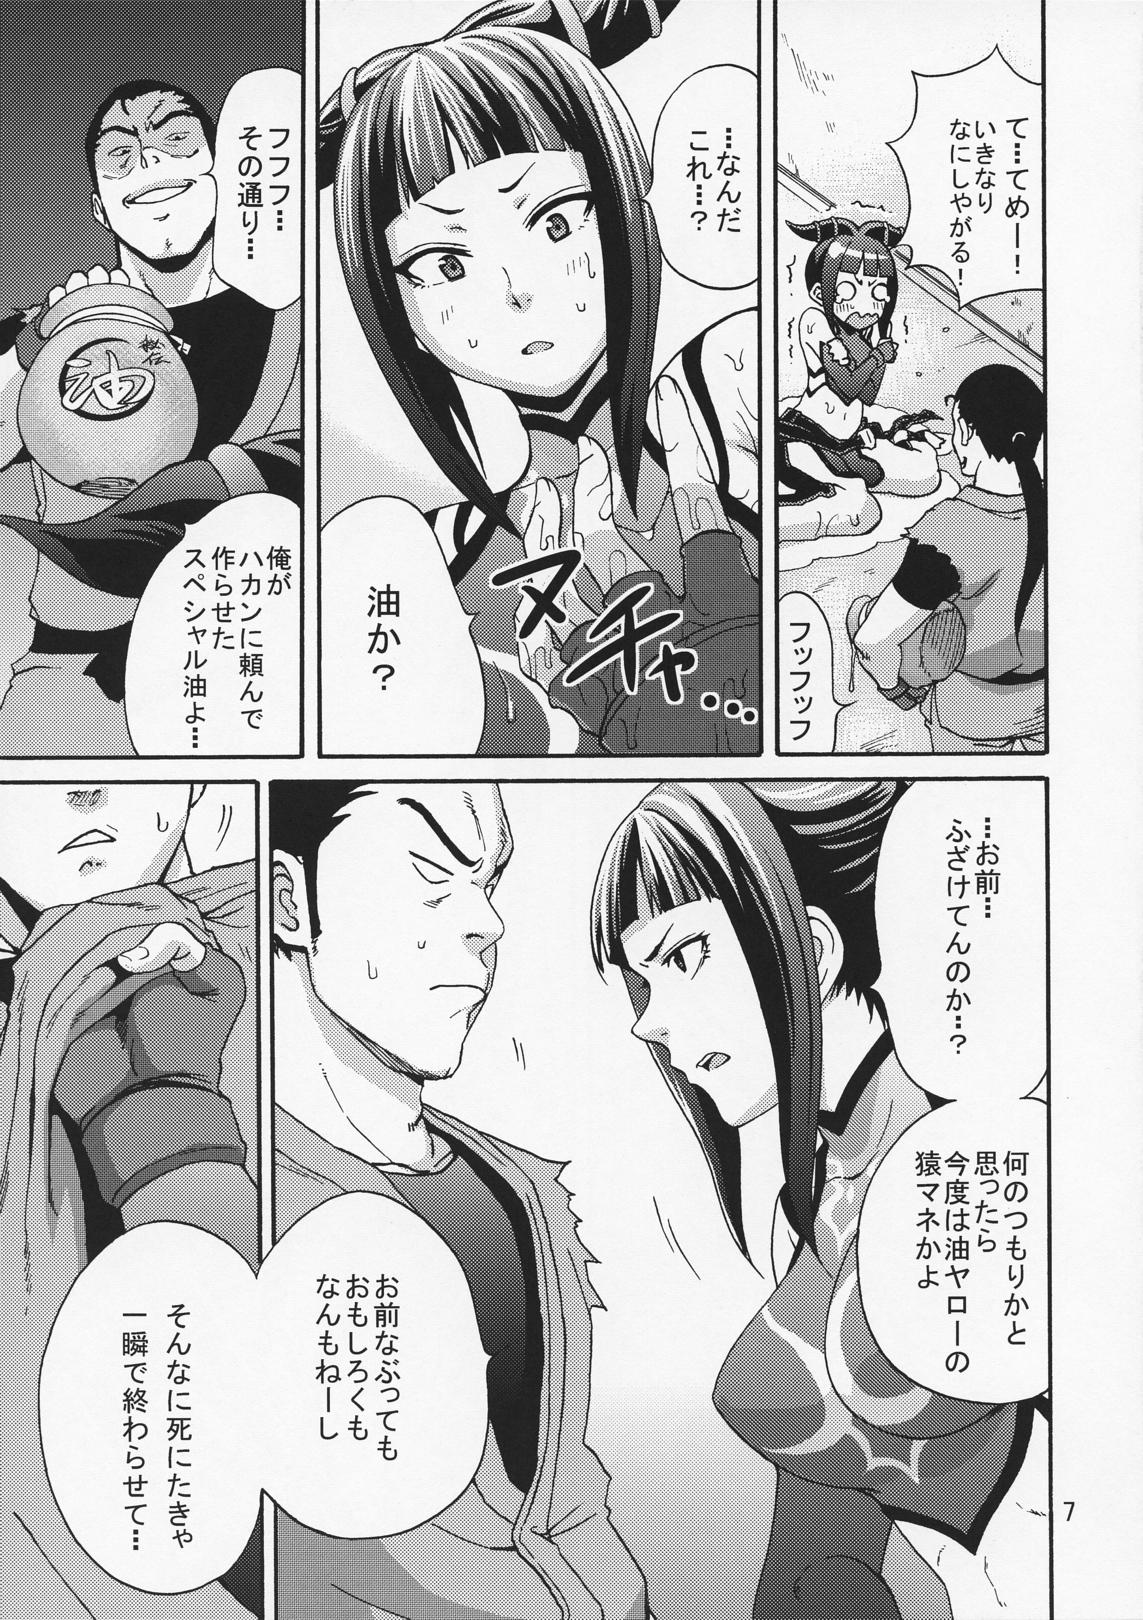 Camgirl EX Kaiten Kurukuru Kurukuru - Street fighter Orgy - Page 6